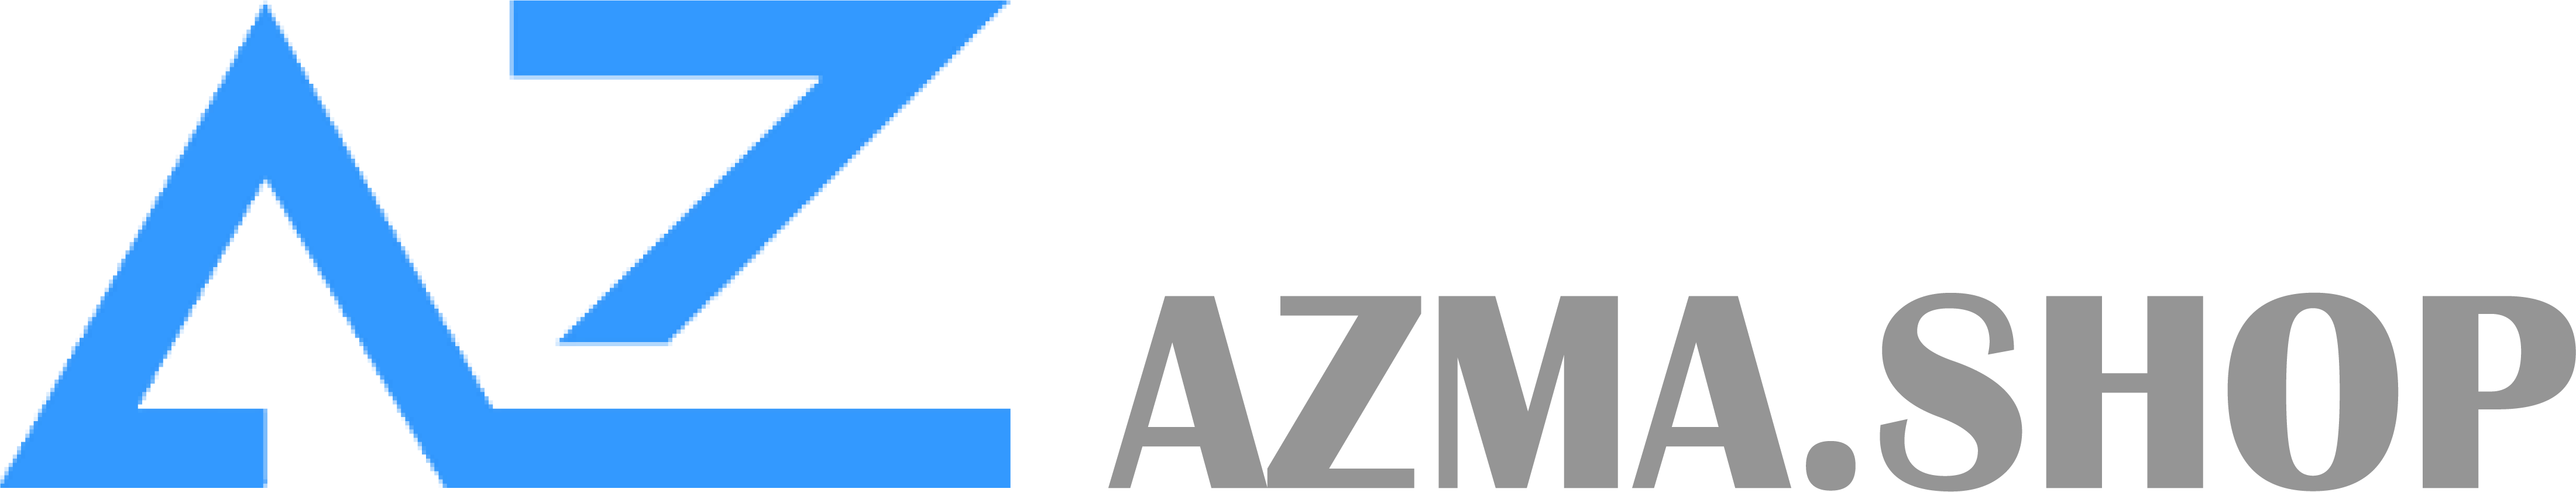 AZma Shop